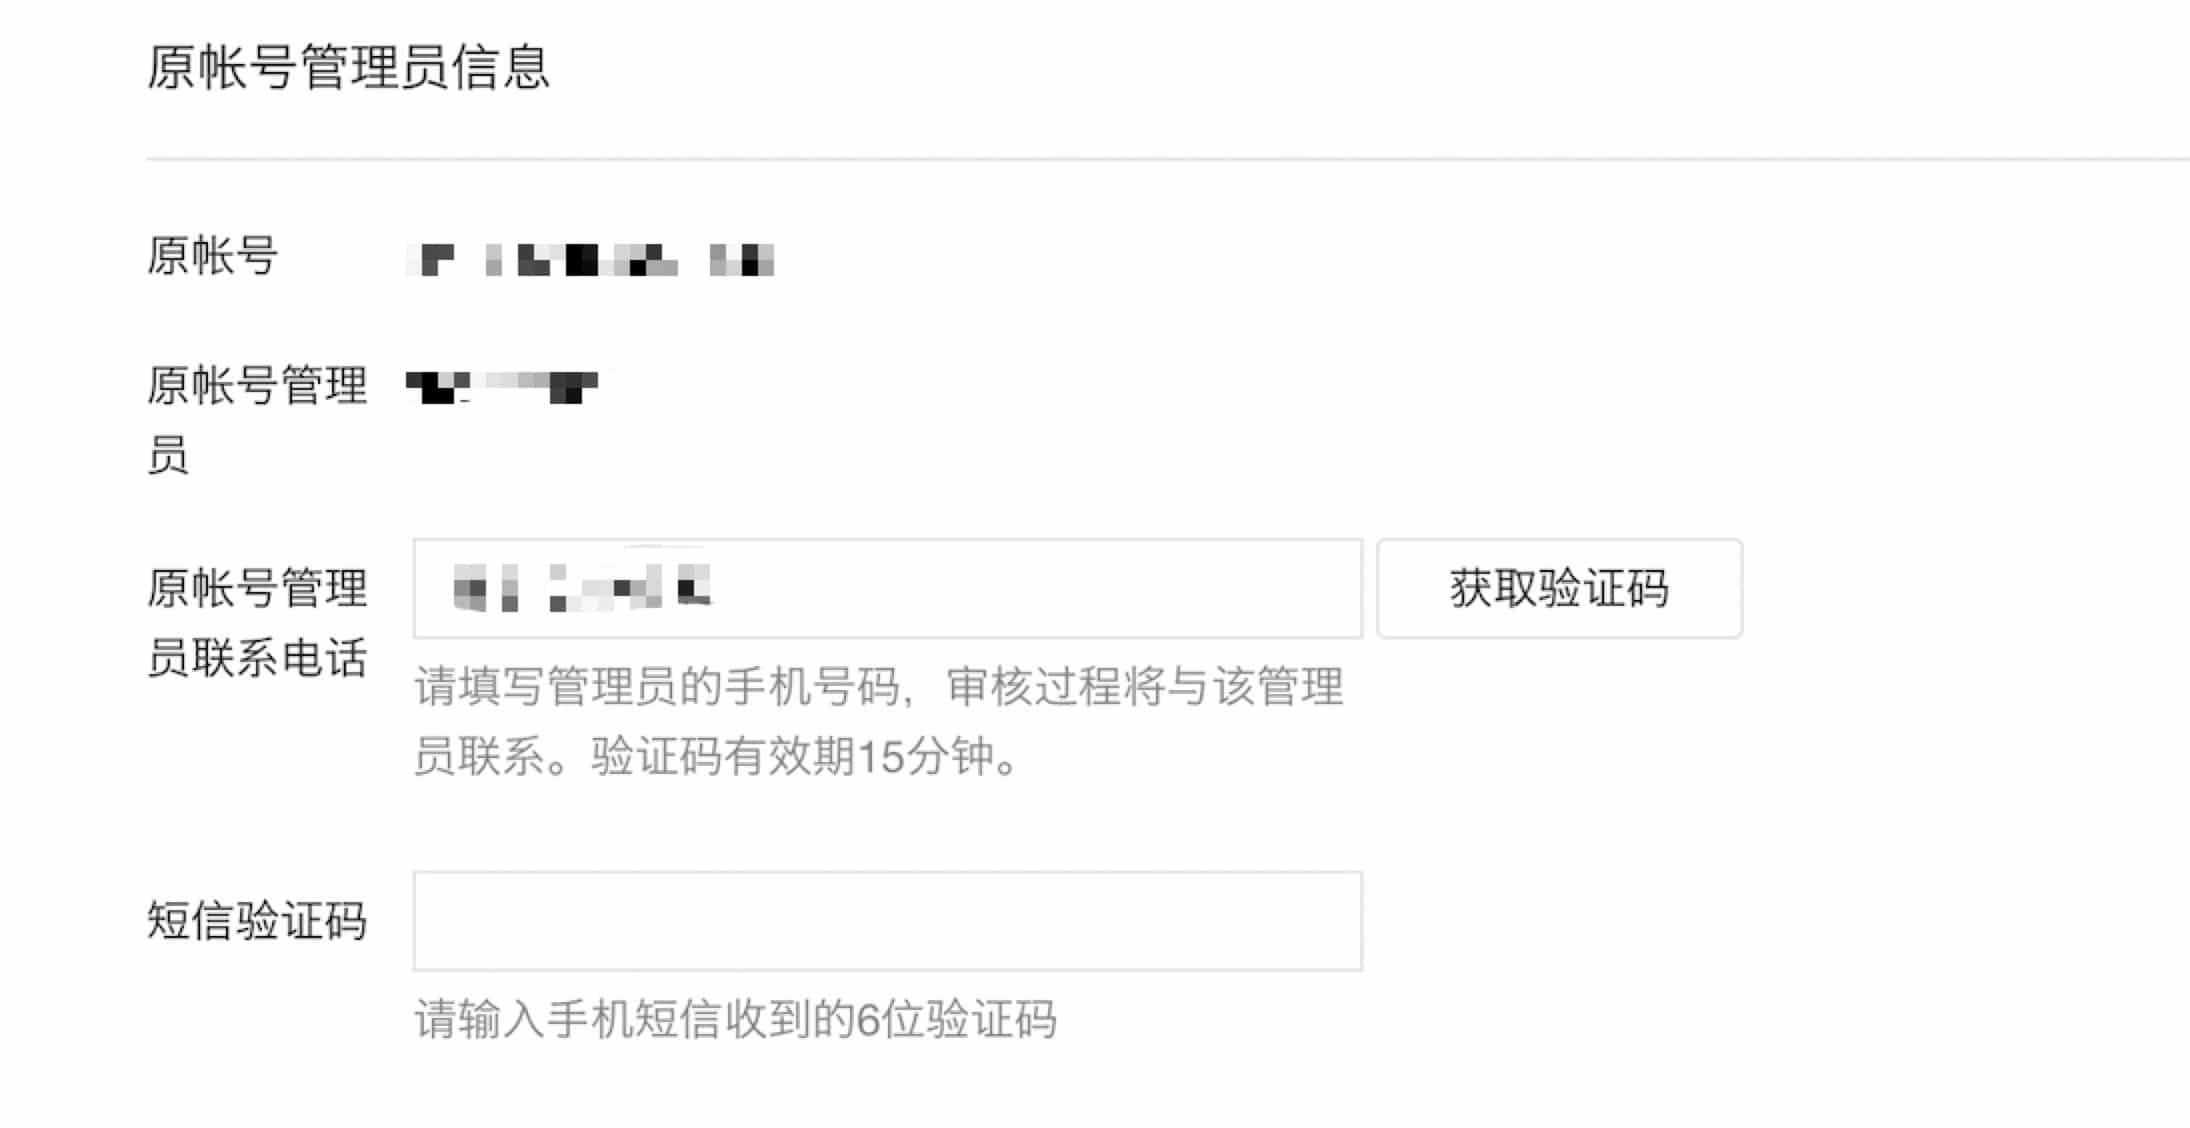 WeChat OA transfer 7